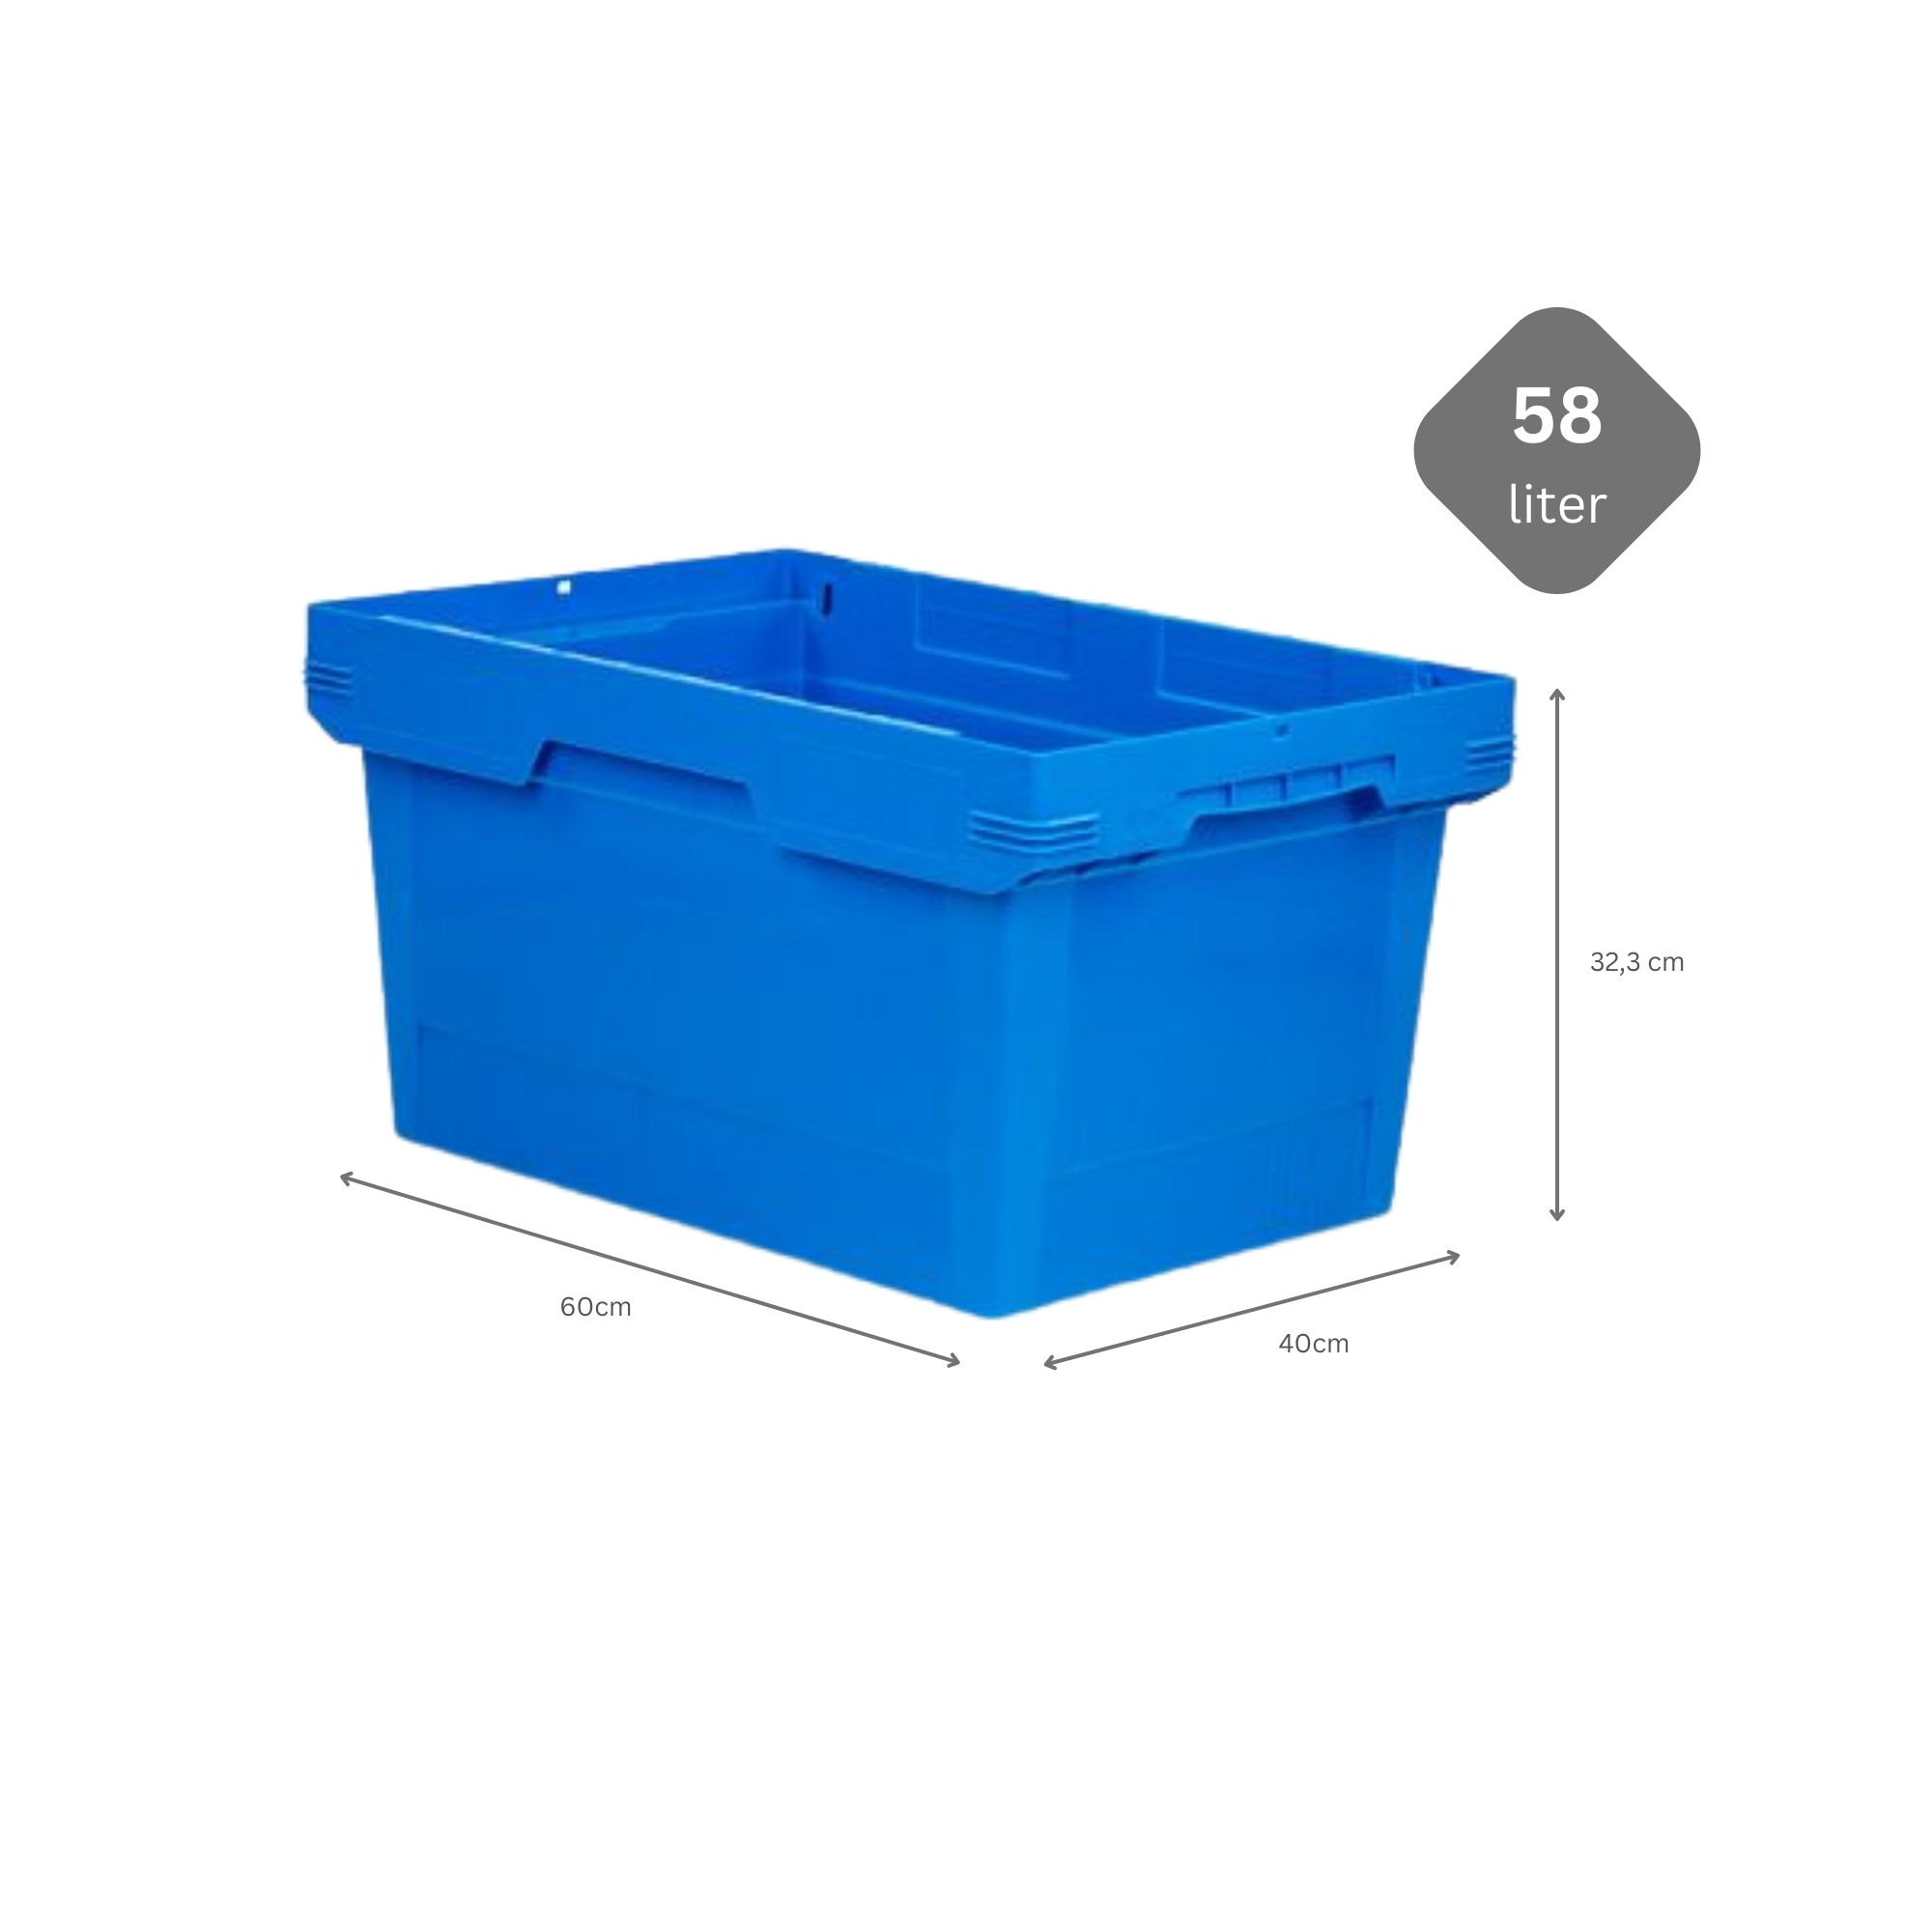 SparSet 5x Conical Mehrweg-Stapelbehälter Blau | HxBxT 32,3x40x60cm | 58 Liter | Lagerbox Eurobox Transportbox Transportbehälter Stapelbehälter